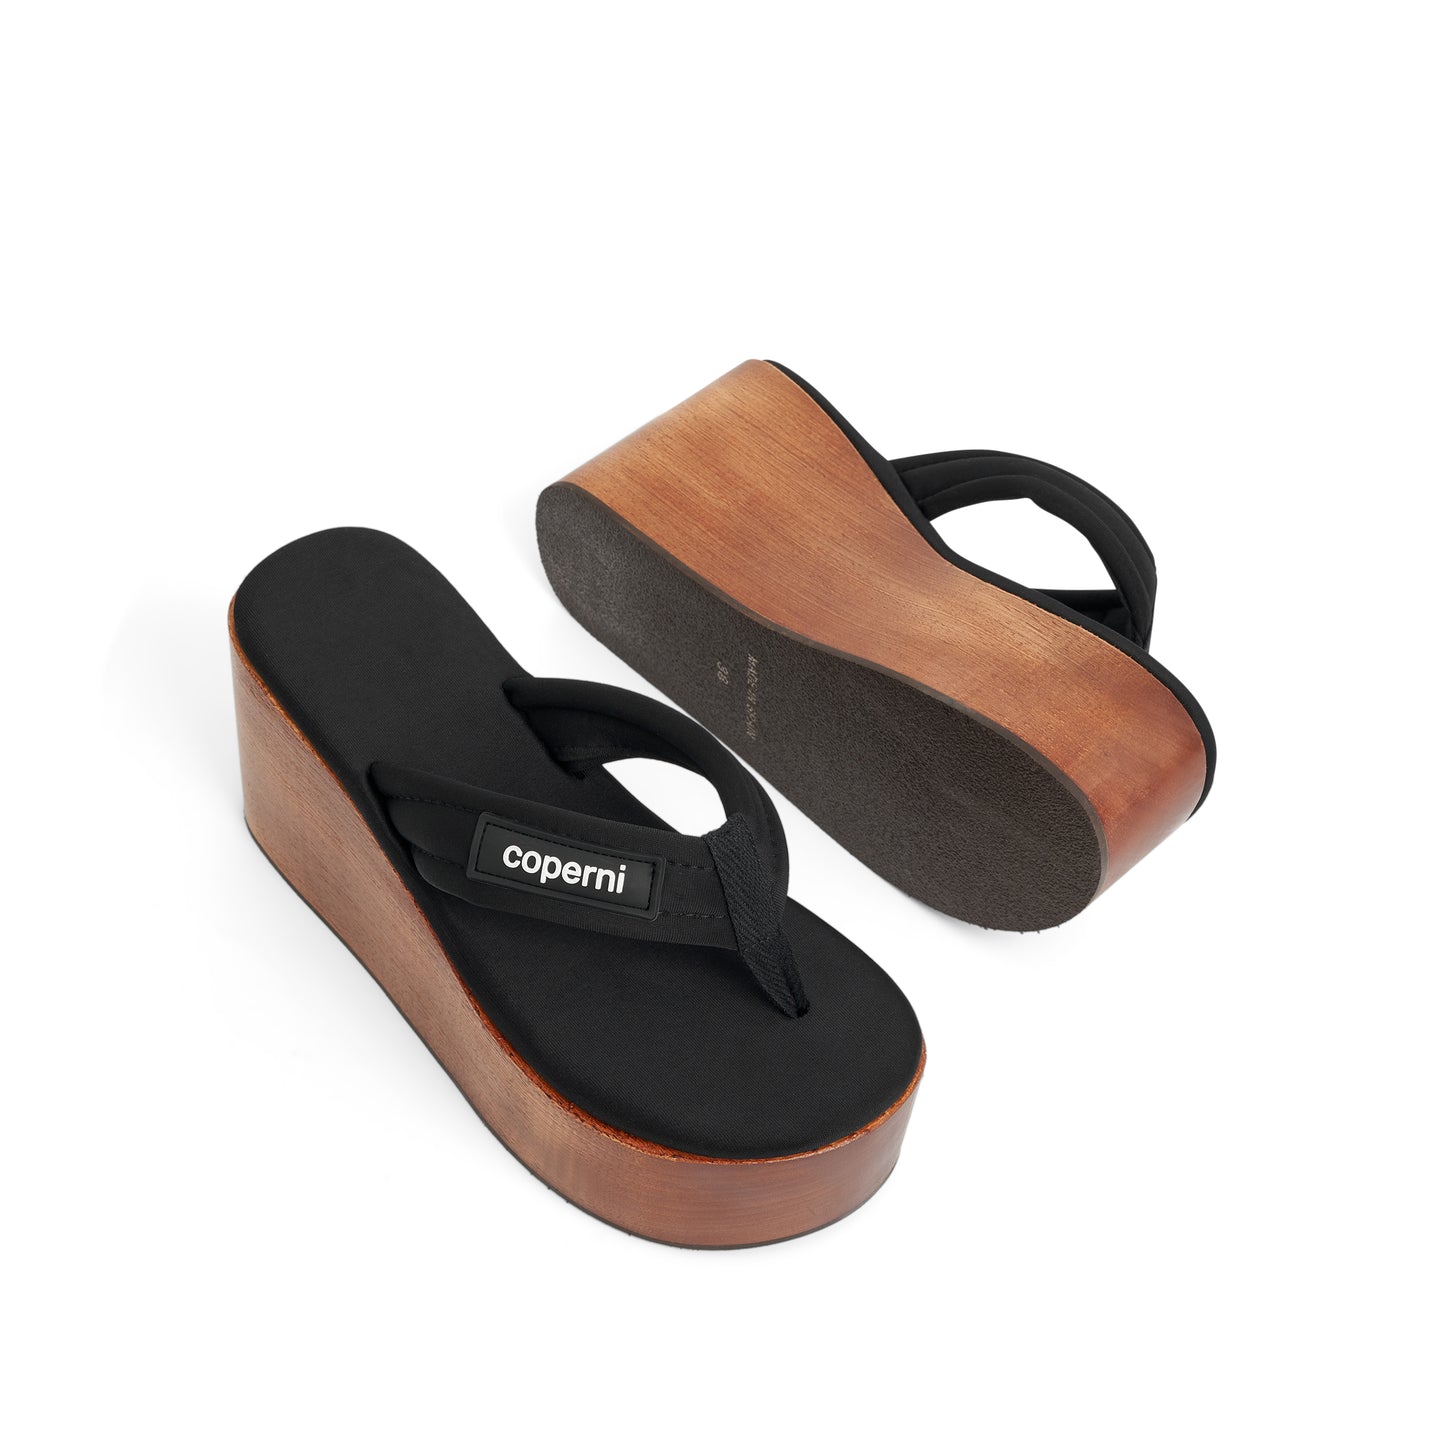 Wooden Branded Wedge Sandal in Black/Brown